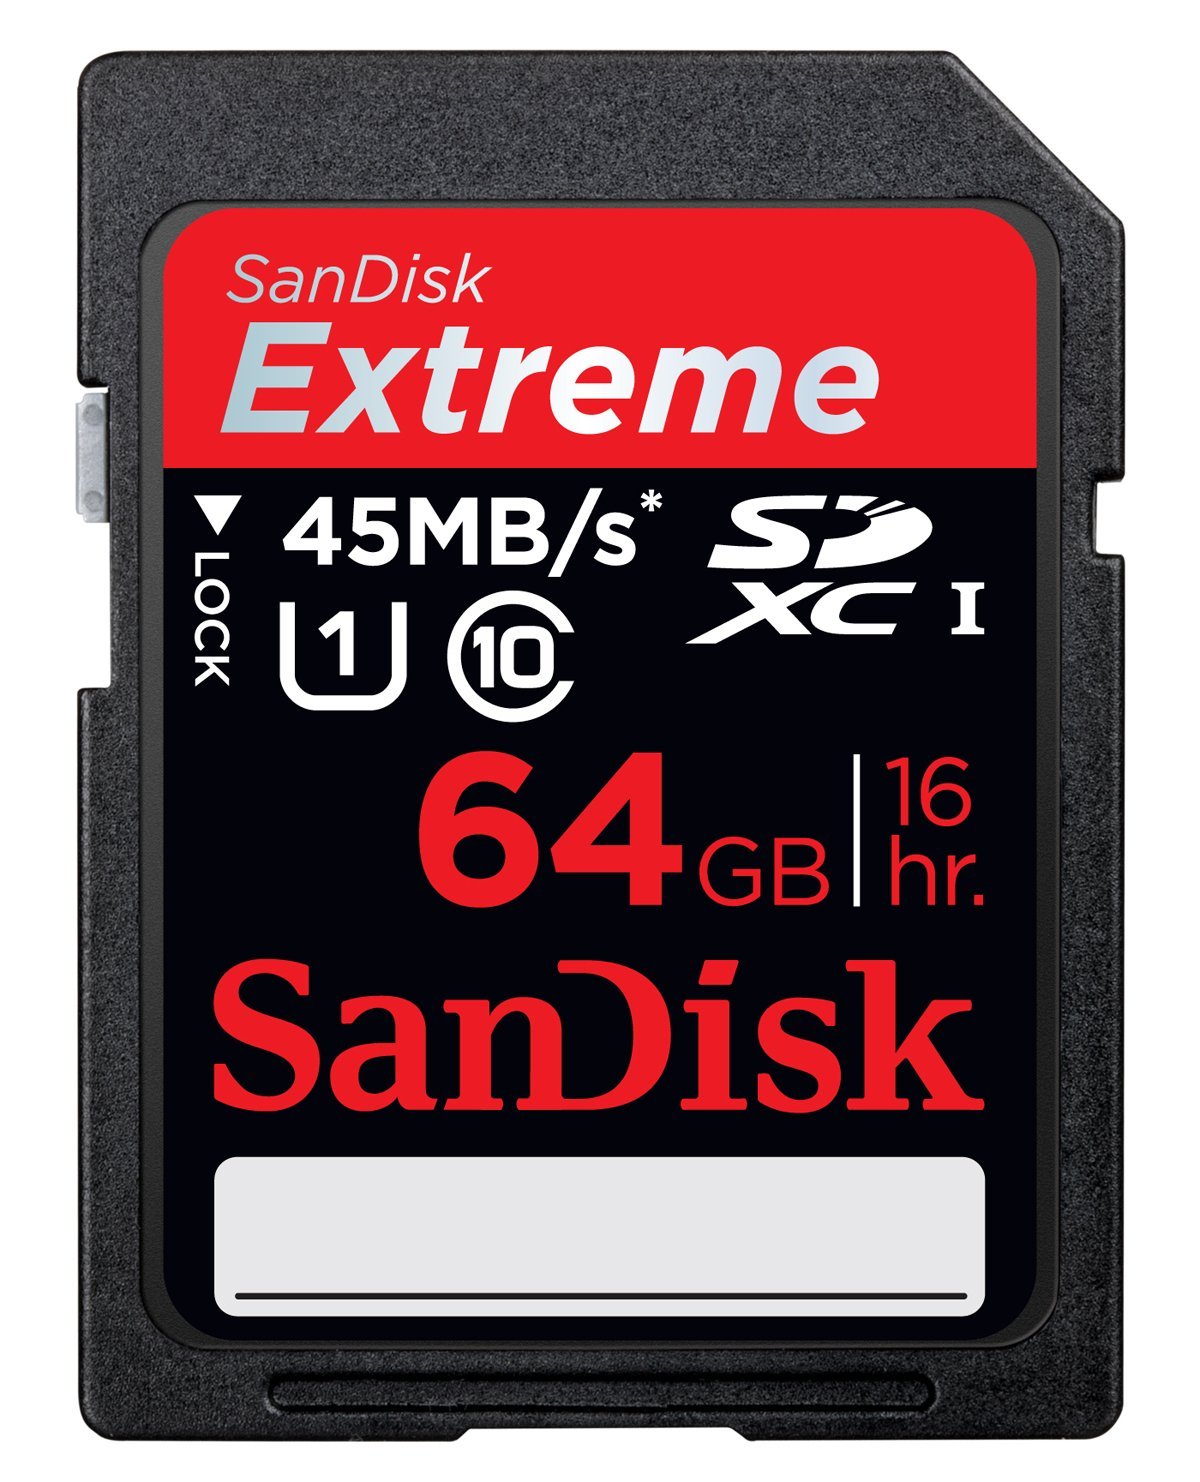 SanDisk Extreme 64 GB SDXC Class 10 UHS-1 mémoire Flash carte 4